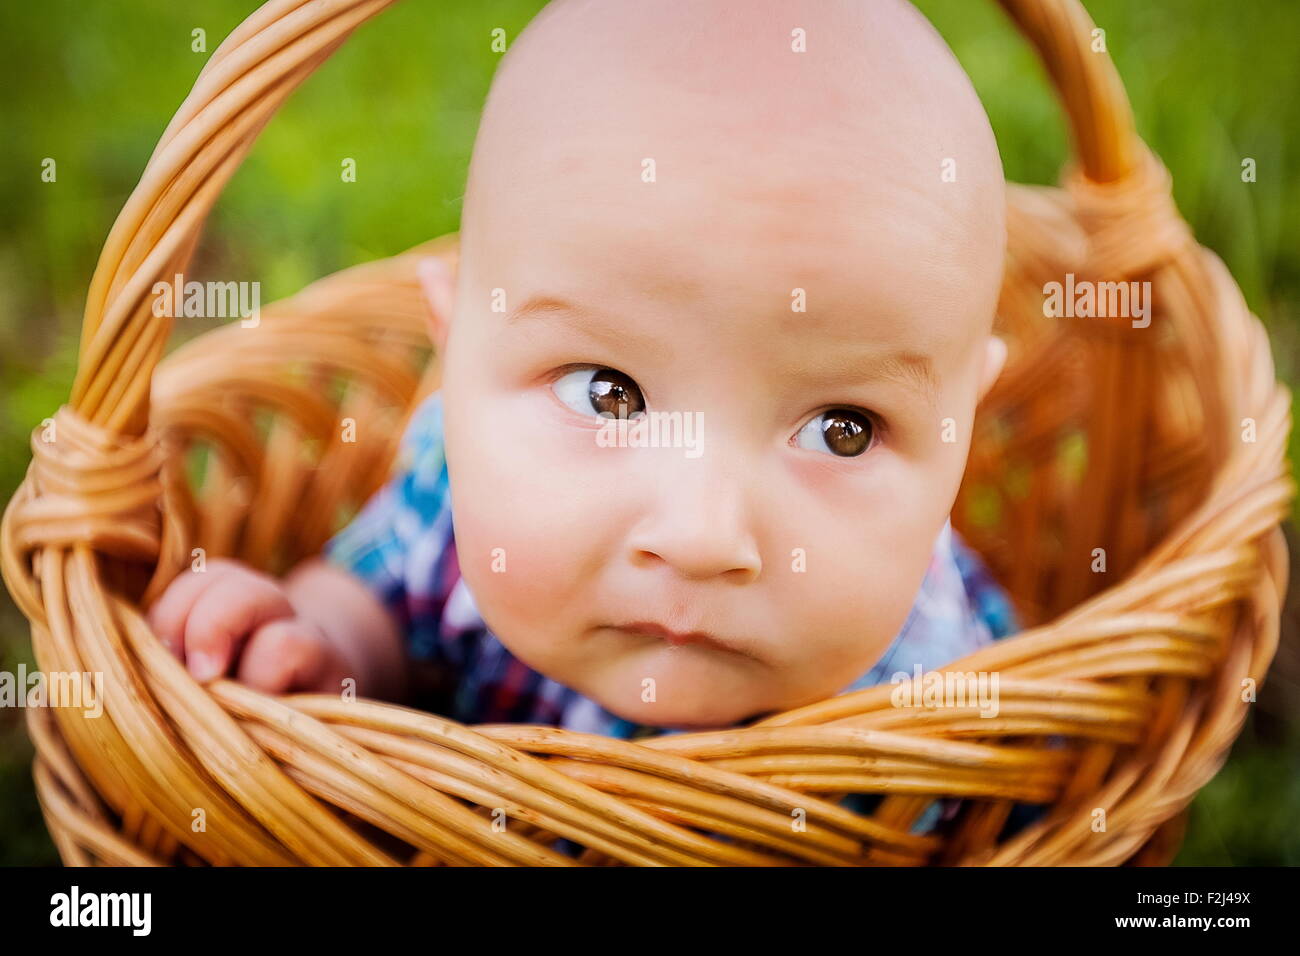 Ritratto di un ragazzino nel carrello - close-up, all'aperto Foto Stock